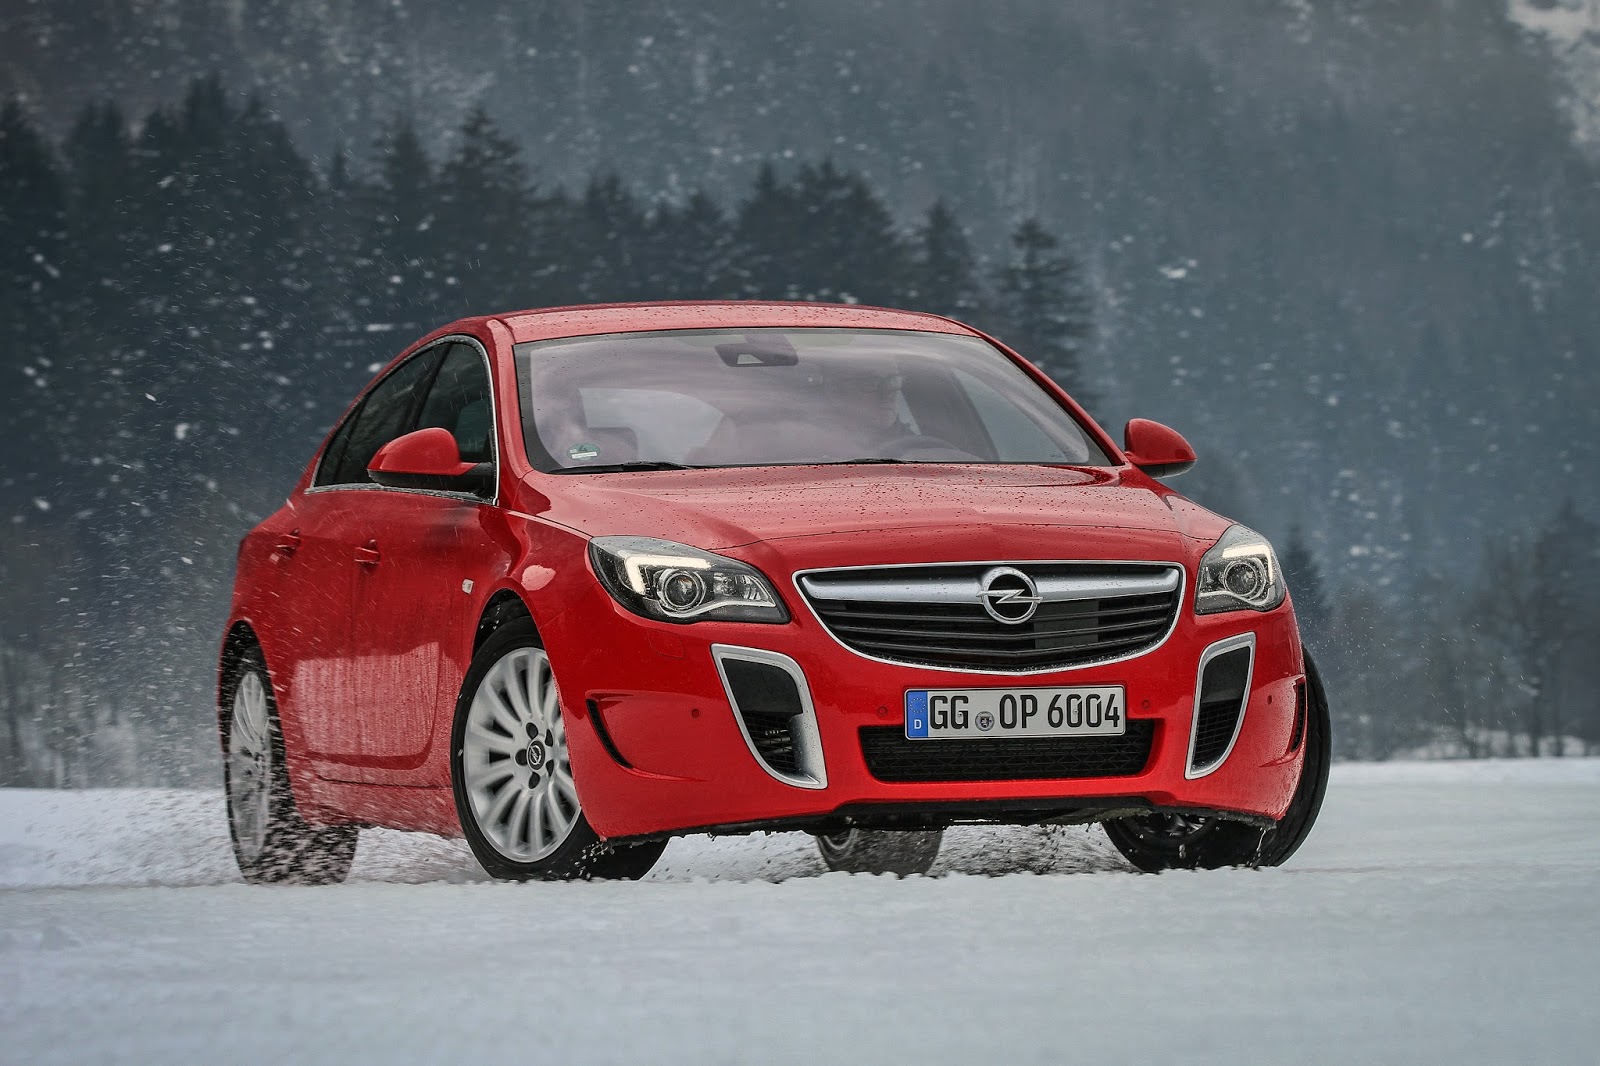 Opel Insignia OPC 303875 Οδηγίες για ασφαλή οδήγηση τον χειμώνα, από την Opel